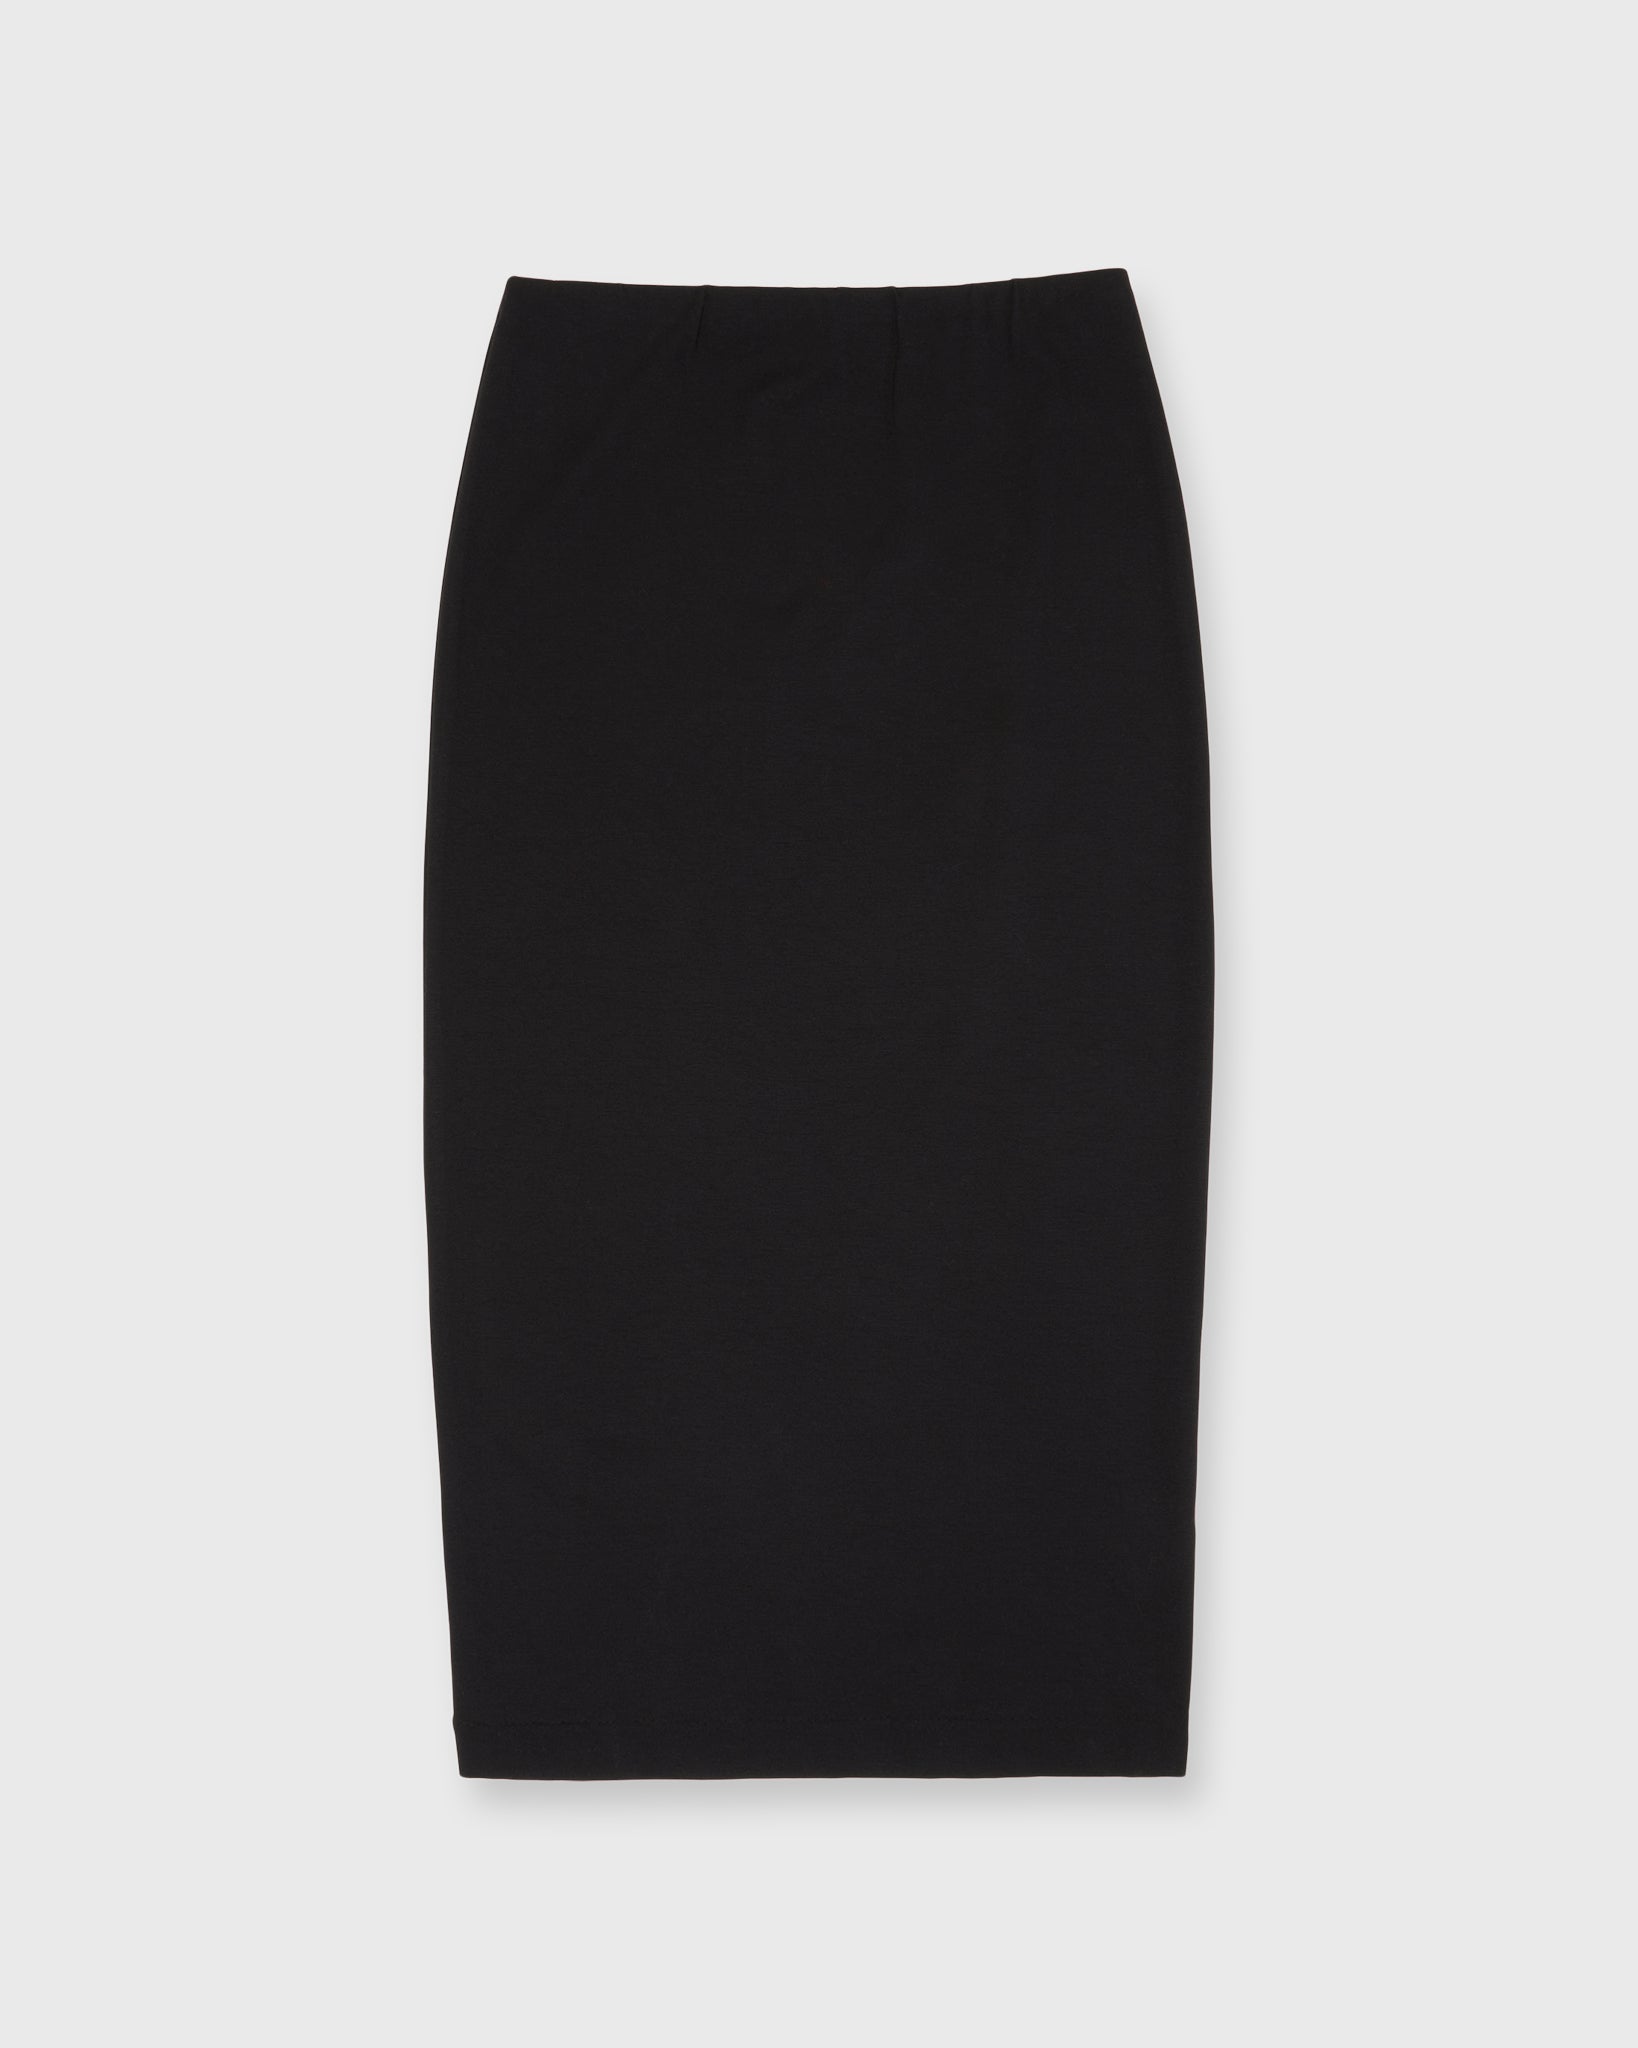 Long Pull-On Skirt in Black Ponte Knit